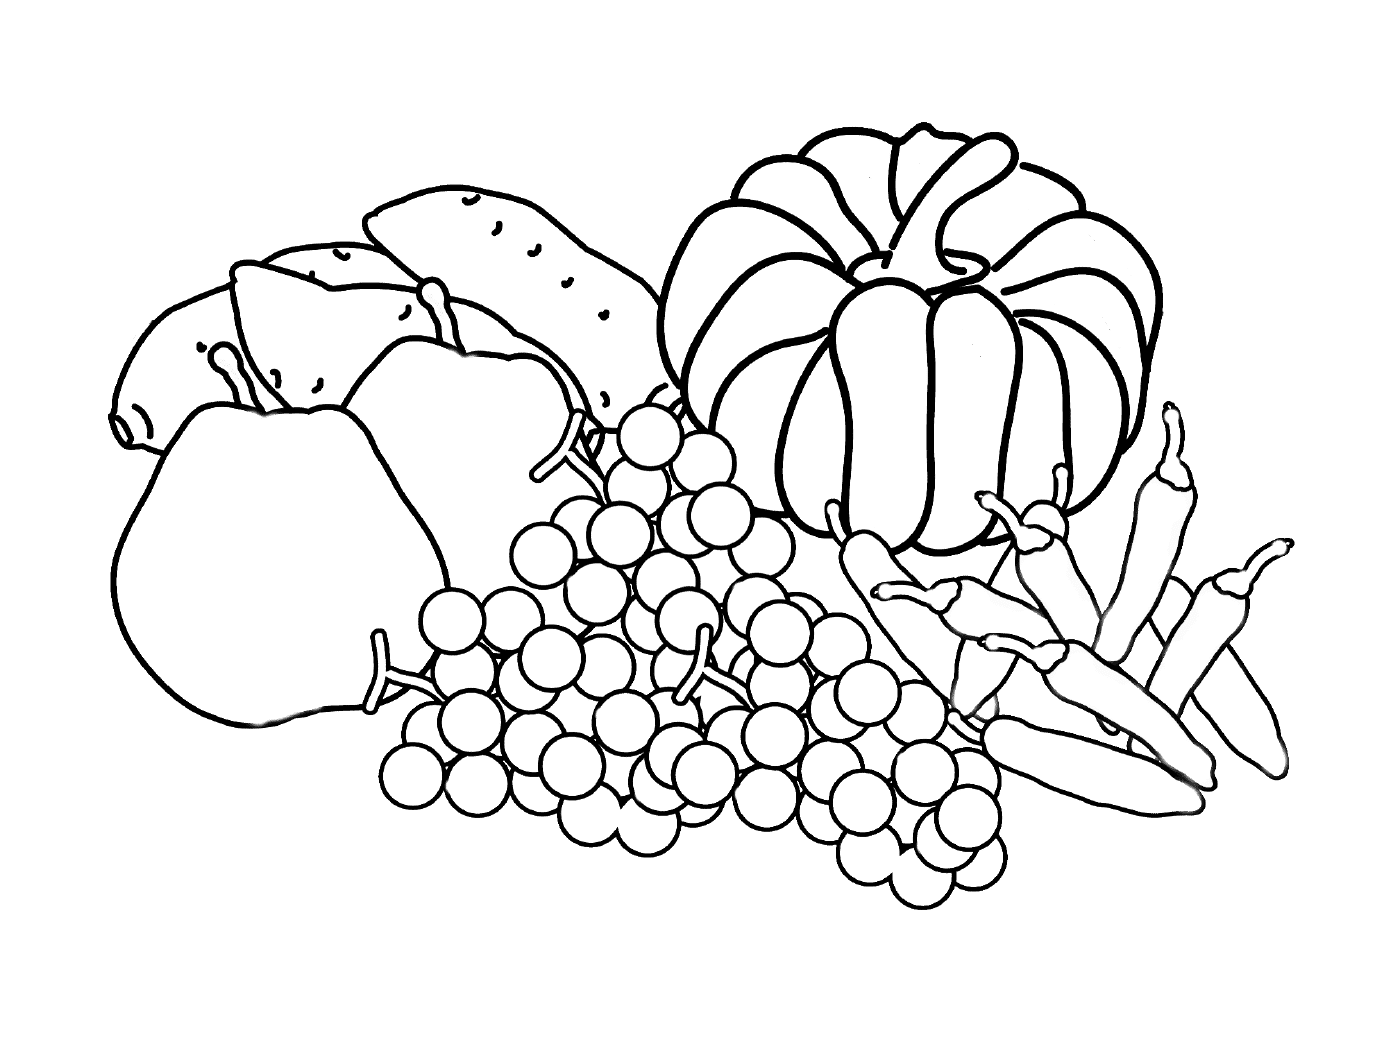  An assortment of fruits 